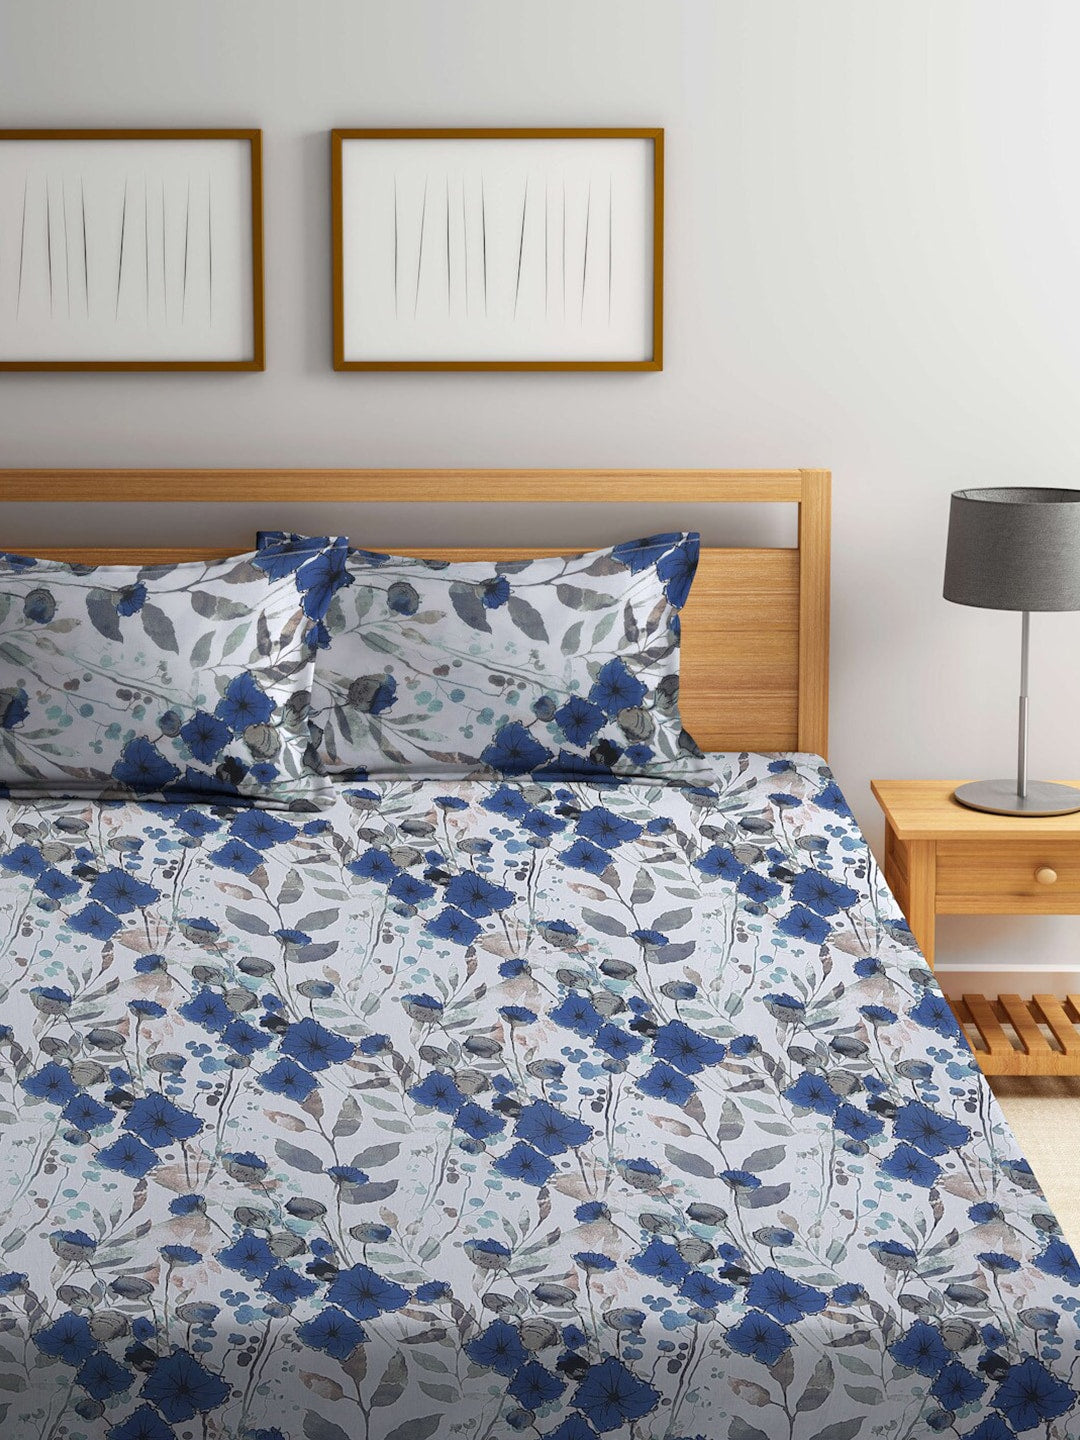 Mirabel - 4 Piece Soft Blue Floral Comforter Set